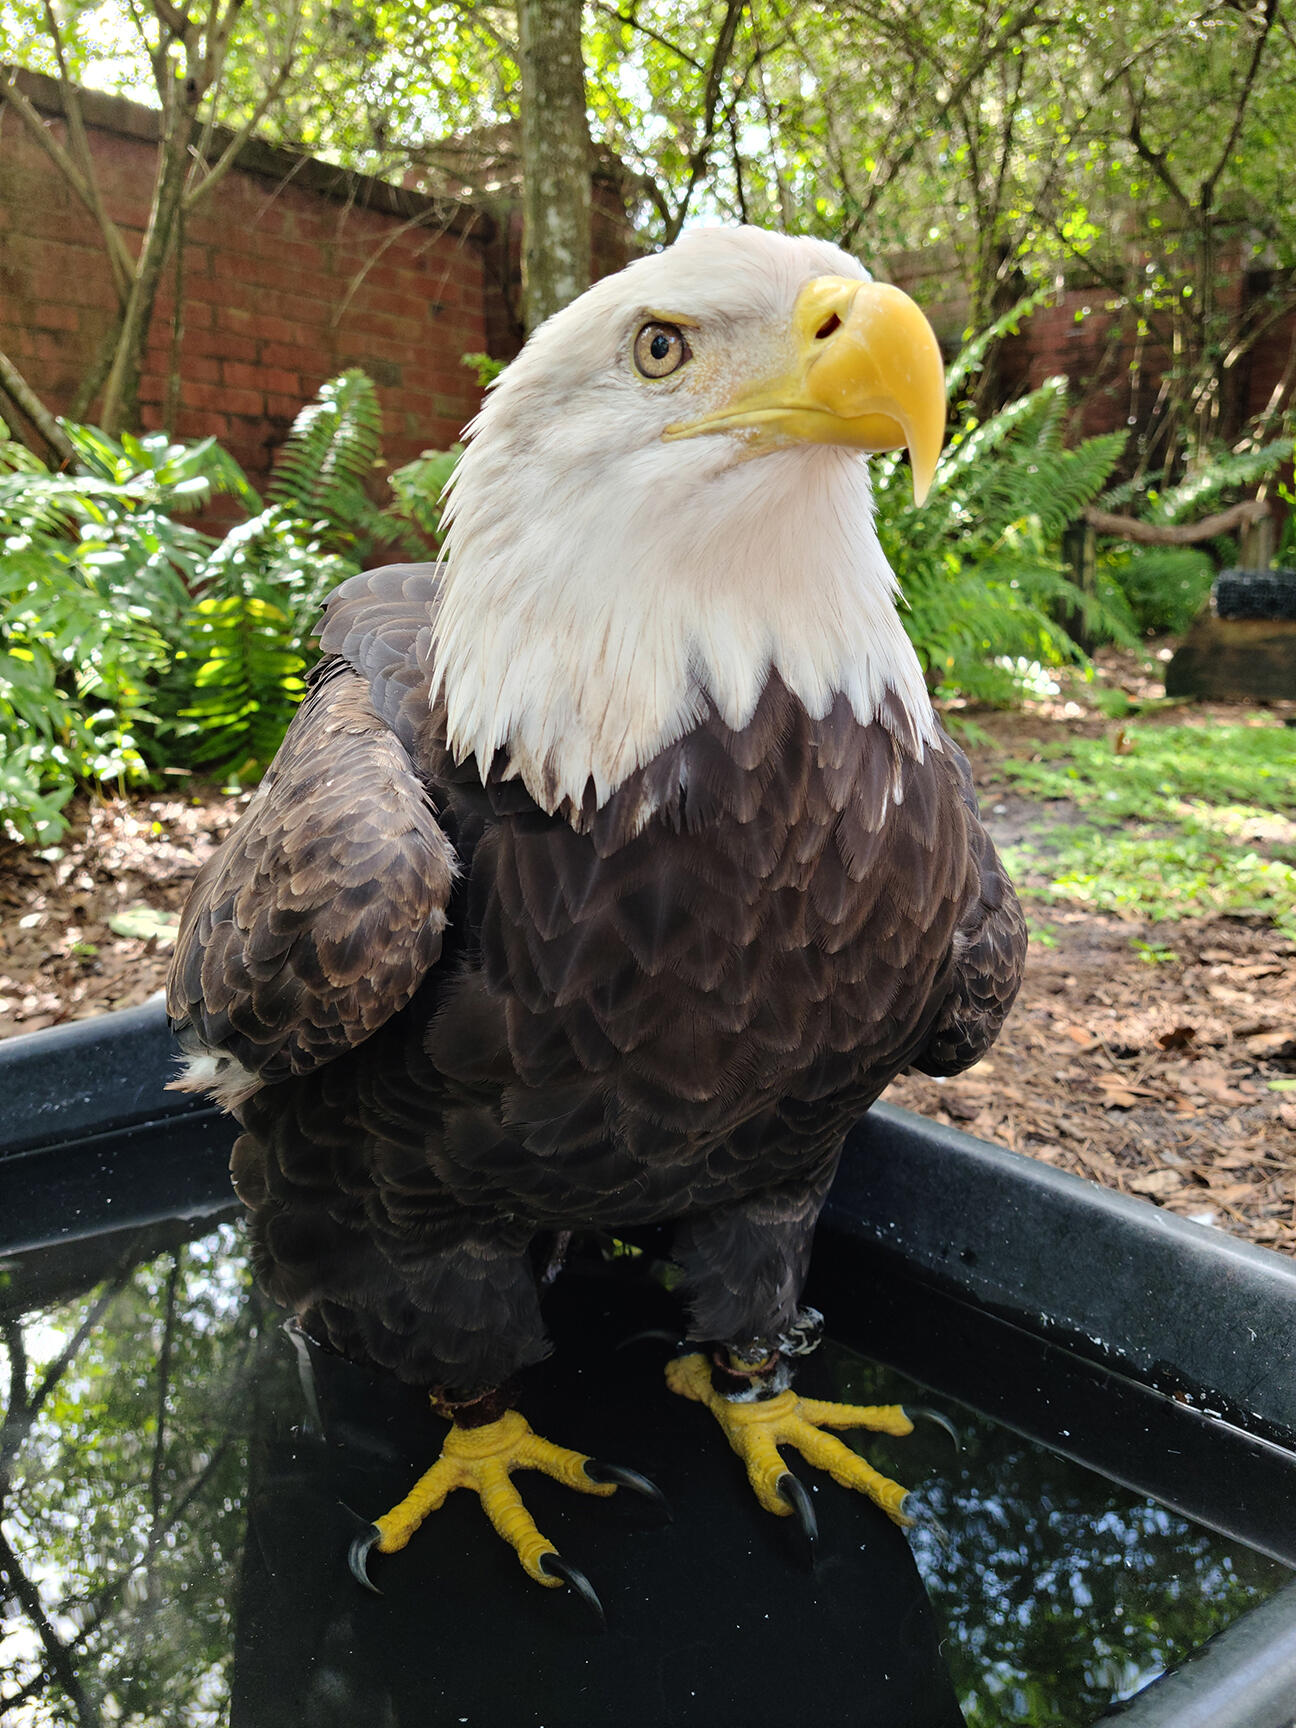 A bald eagle in a bathtub